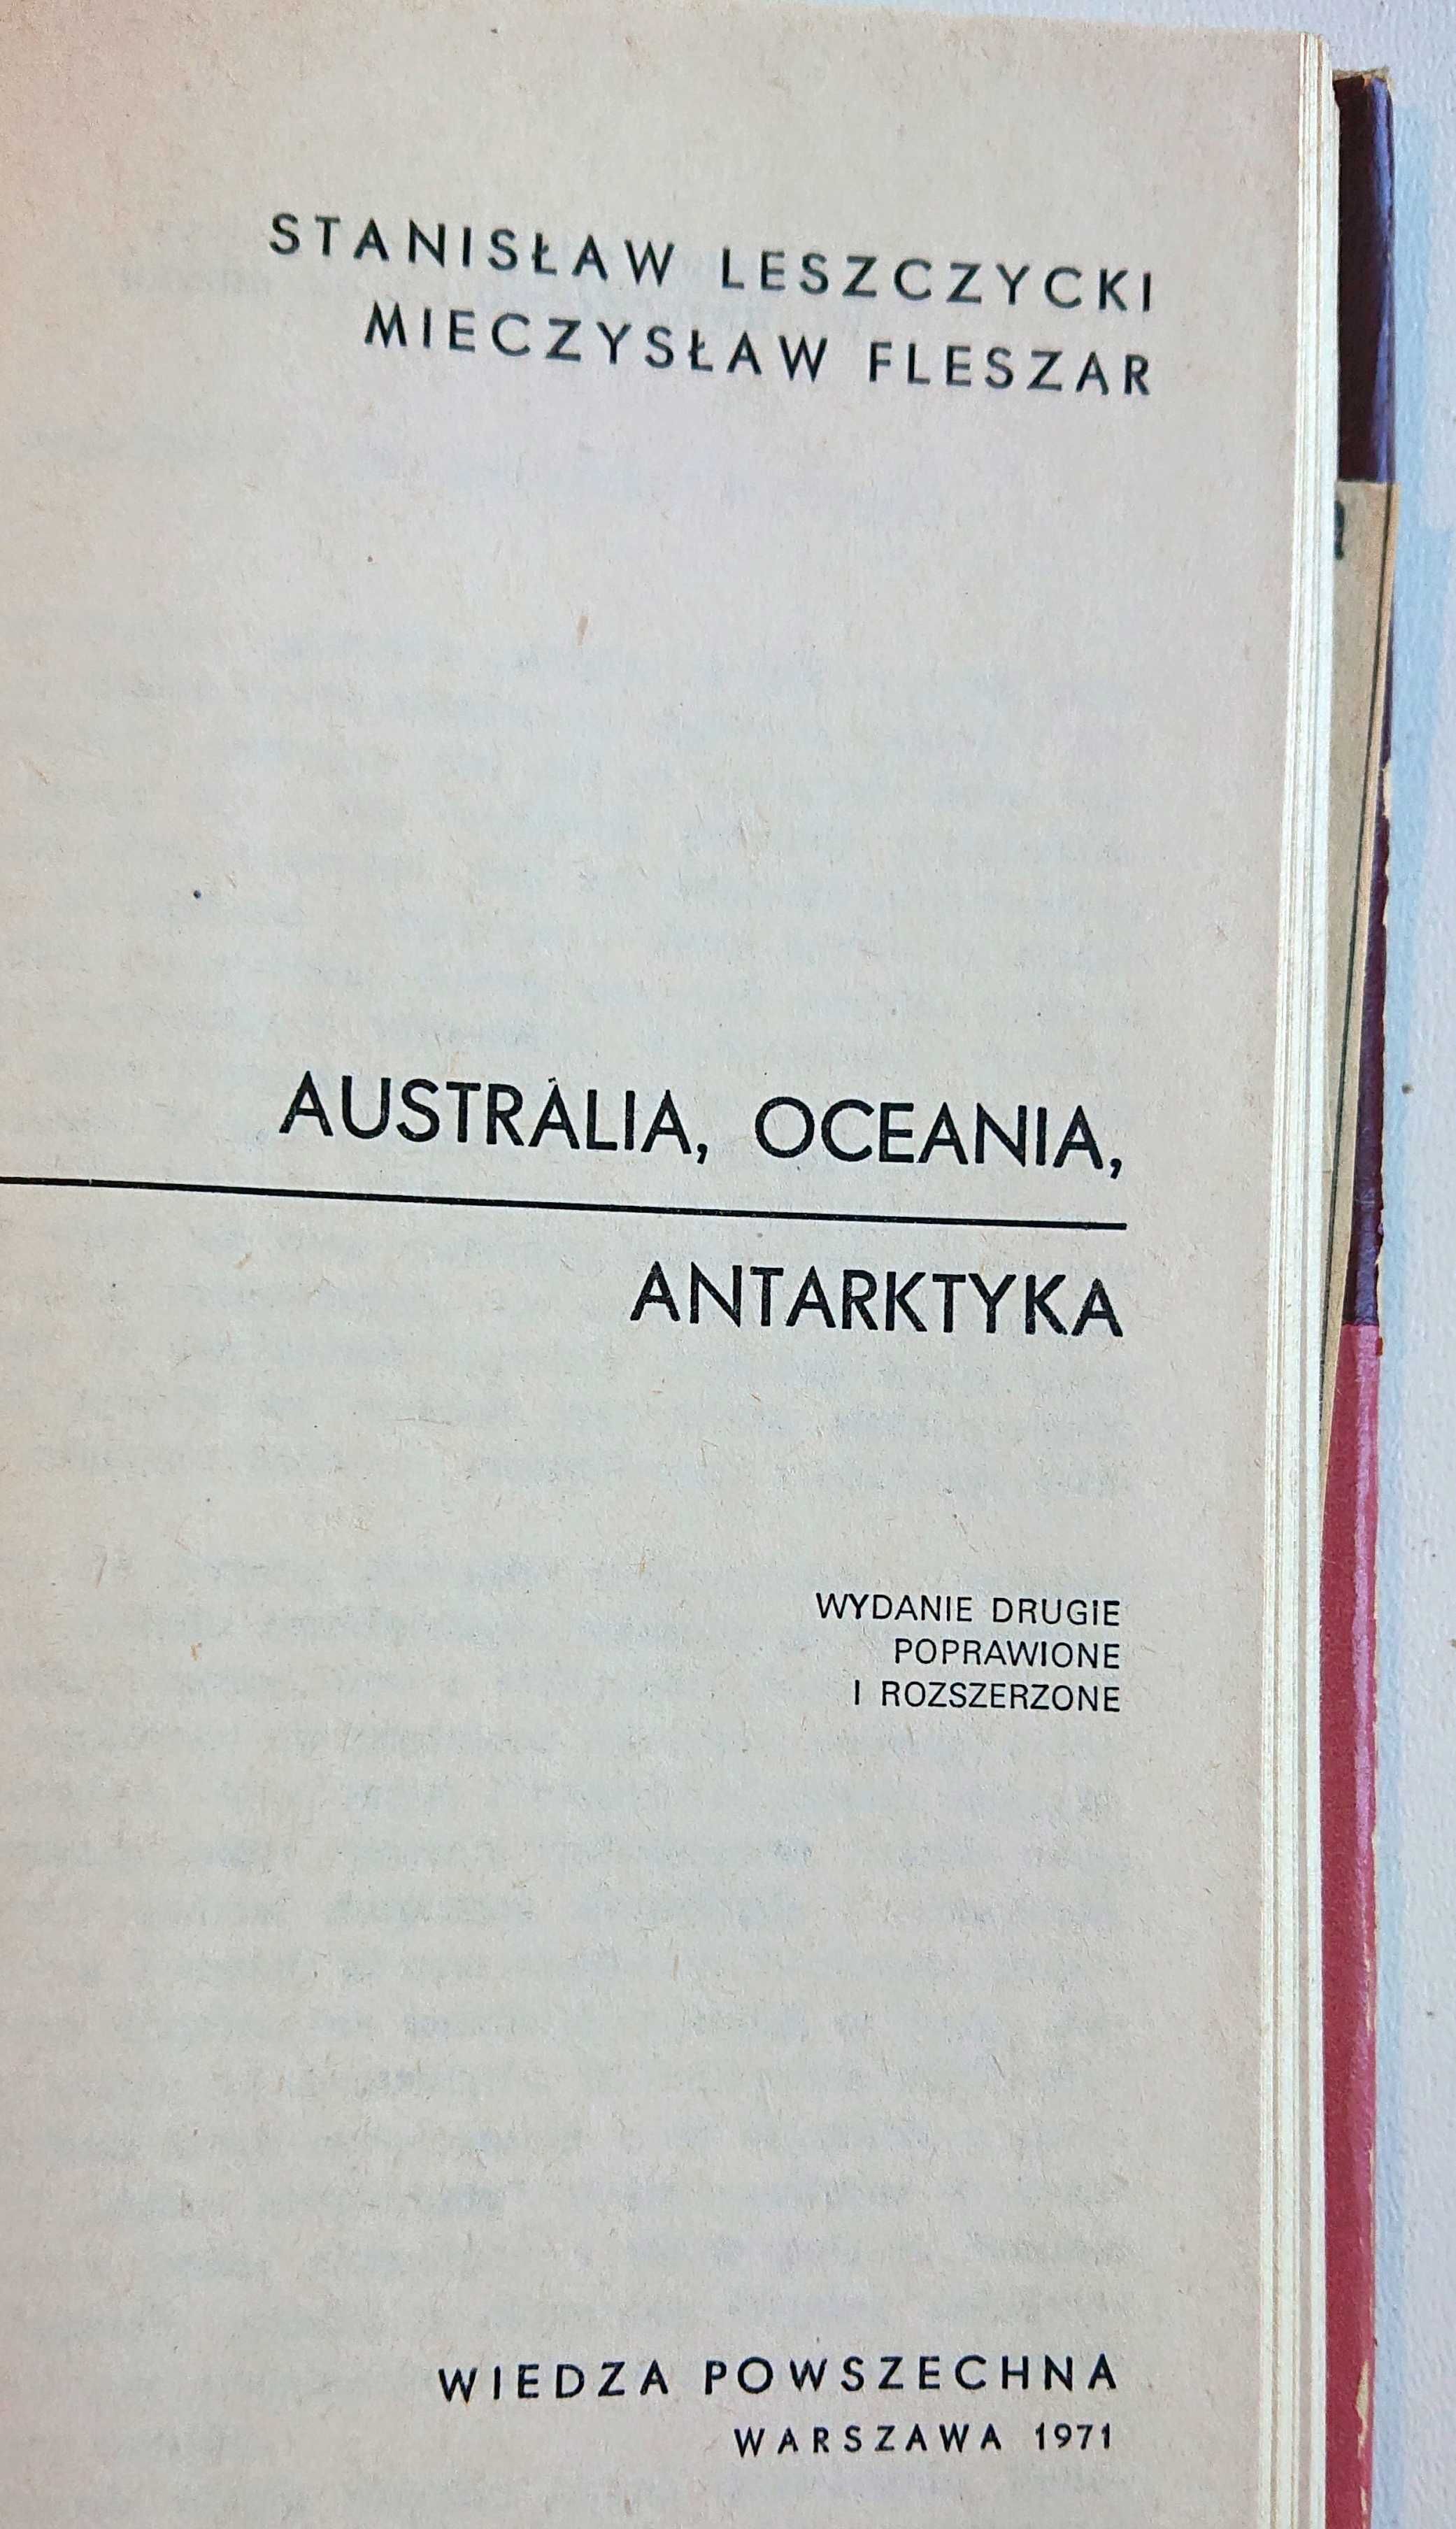 "Australia, Oceania, Antarktyka"